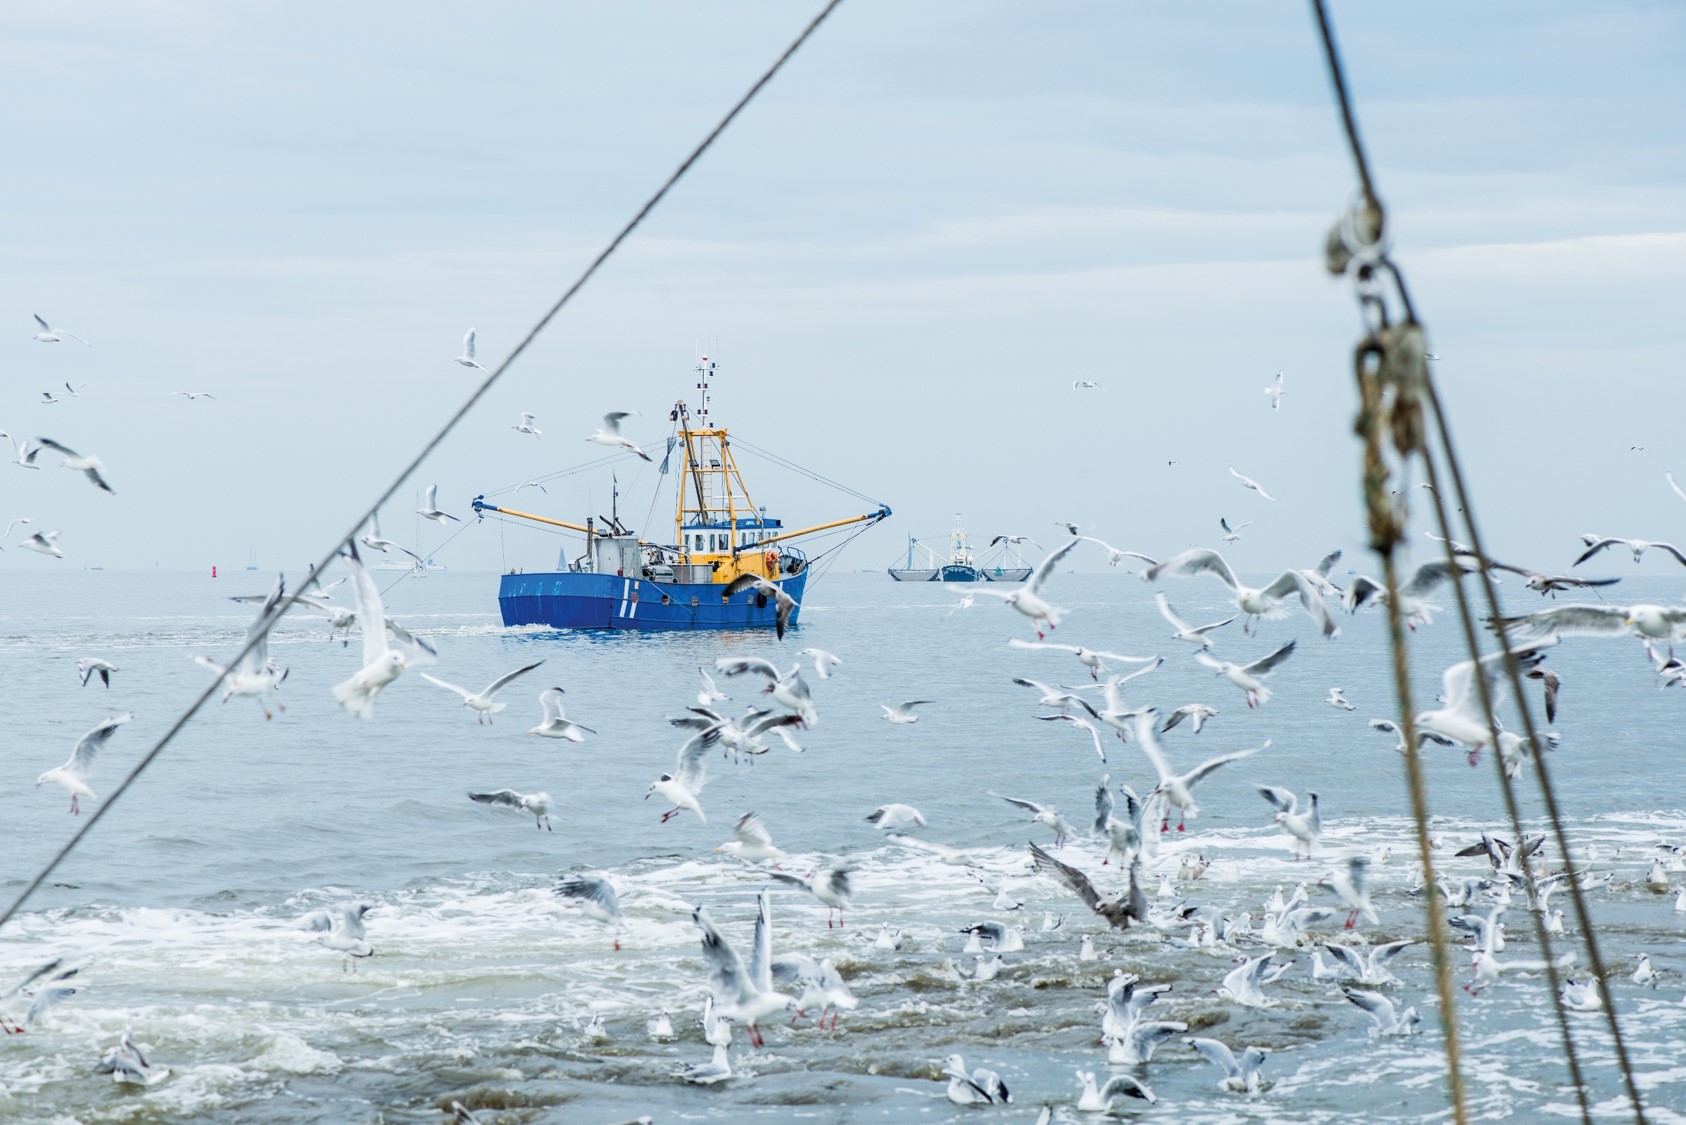 pesca sostenibile